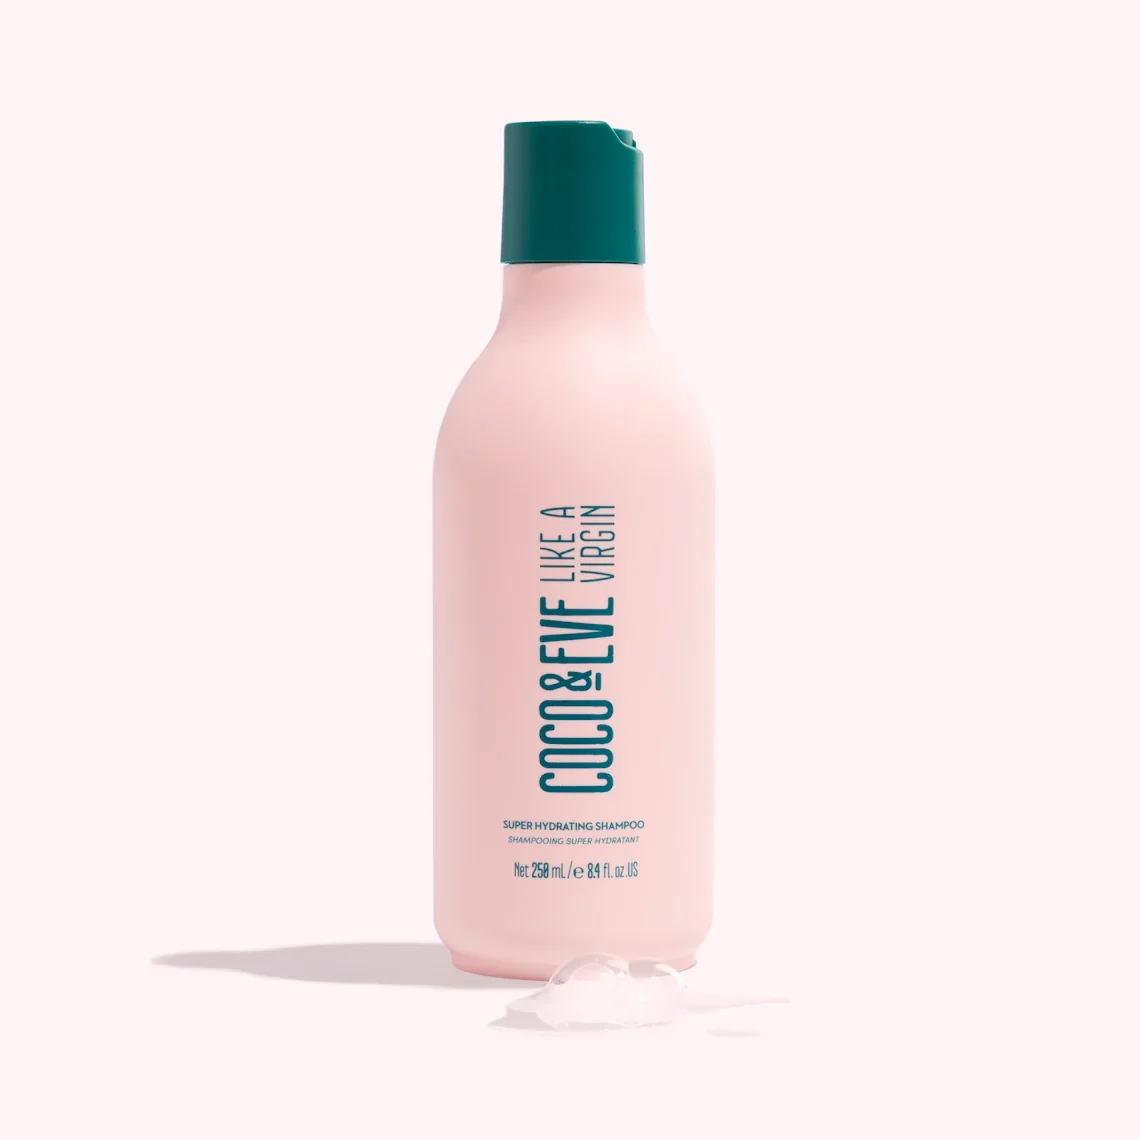 Super Hydrating Shampoo - Super Hydrating Shampoo